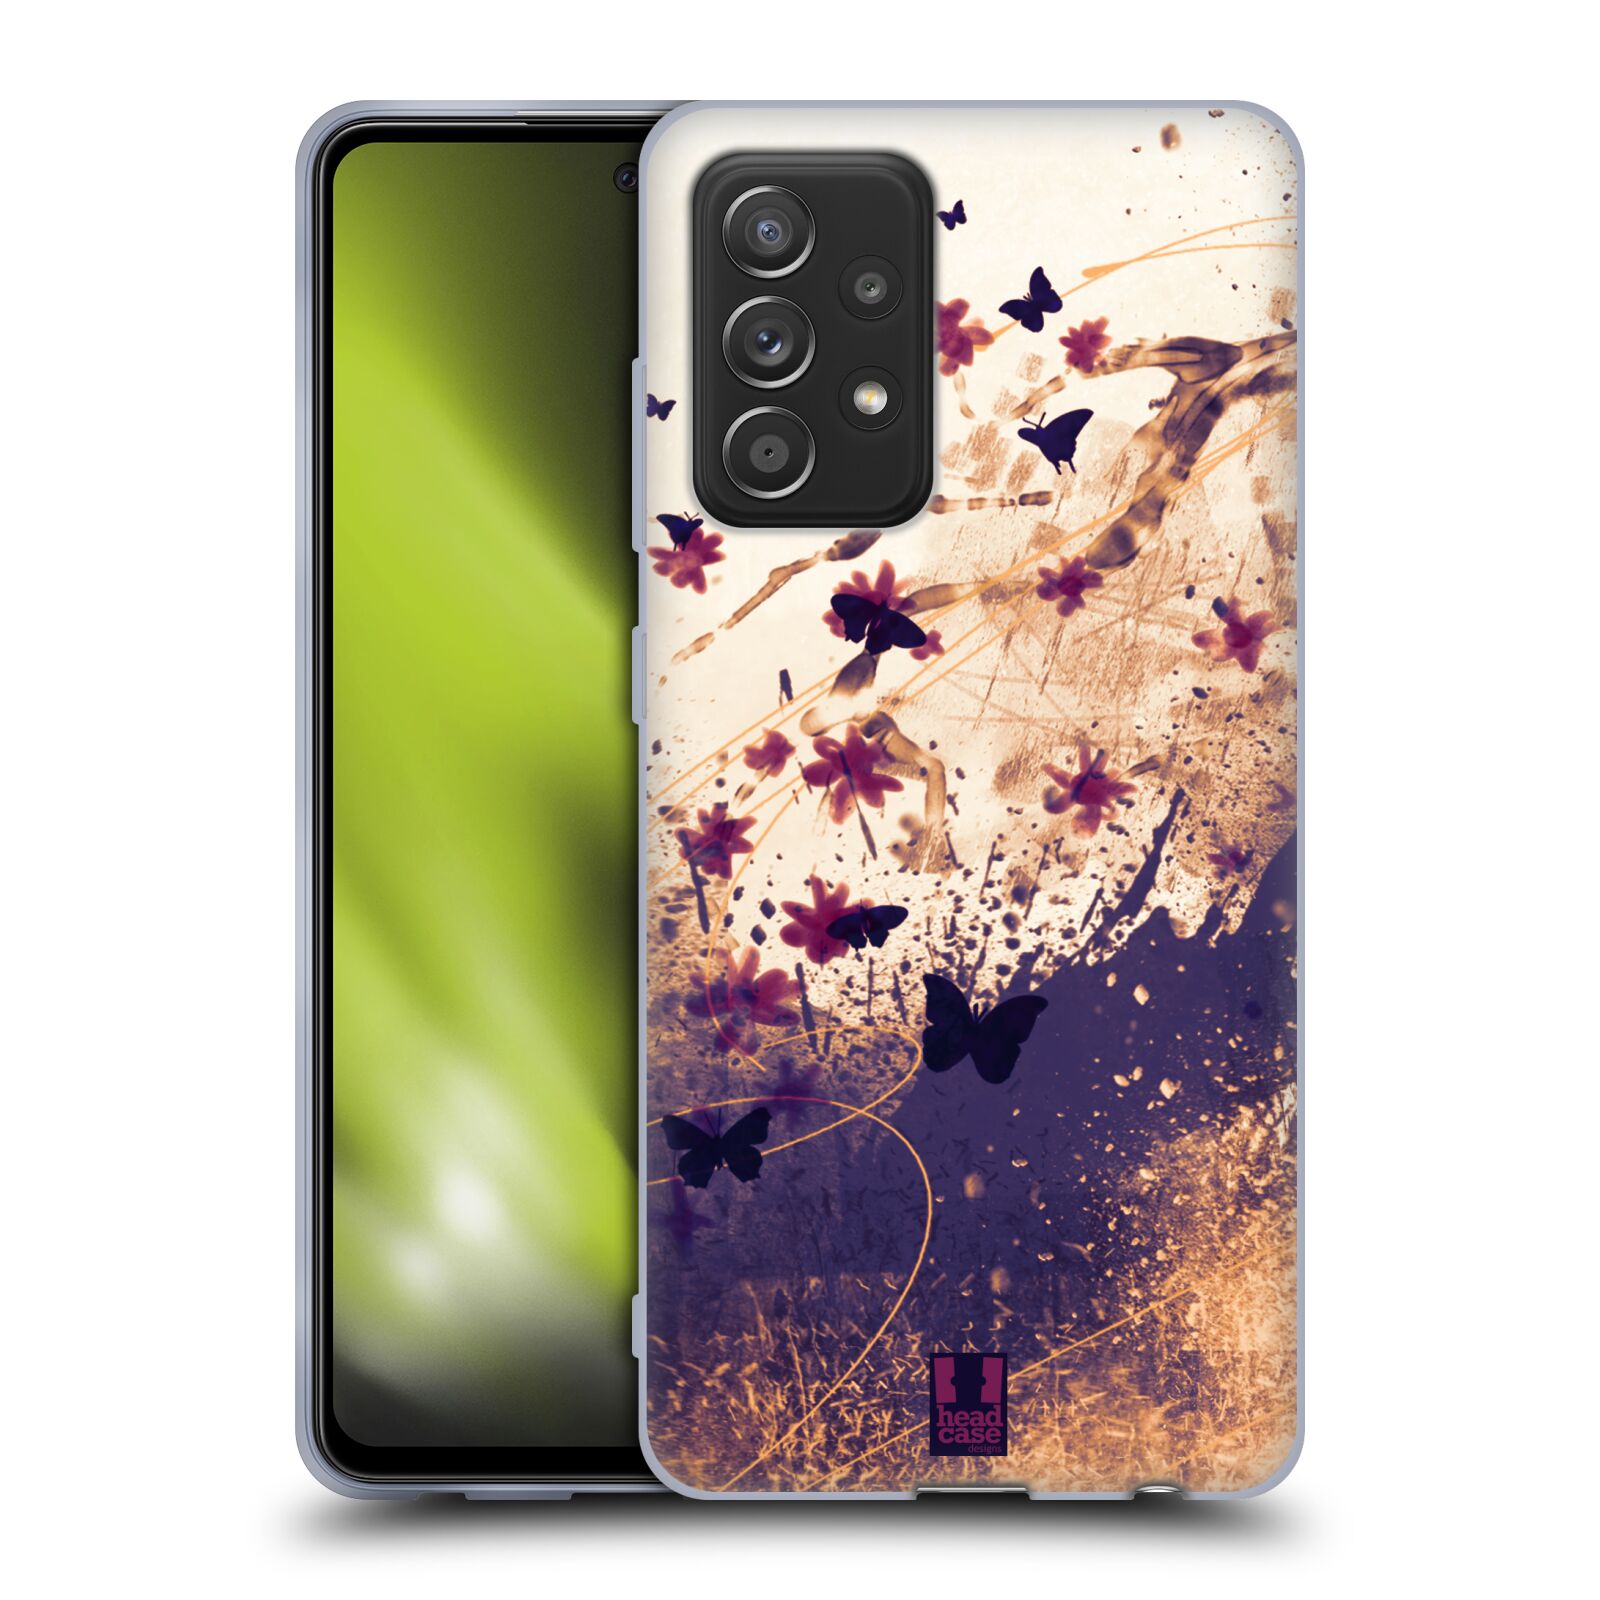 Plastový obal HEAD CASE na mobil Samsung Galaxy A52 / A52 5G / A52s 5G vzor Kreslené barevné květiny KVĚTY A MOTÝLCI